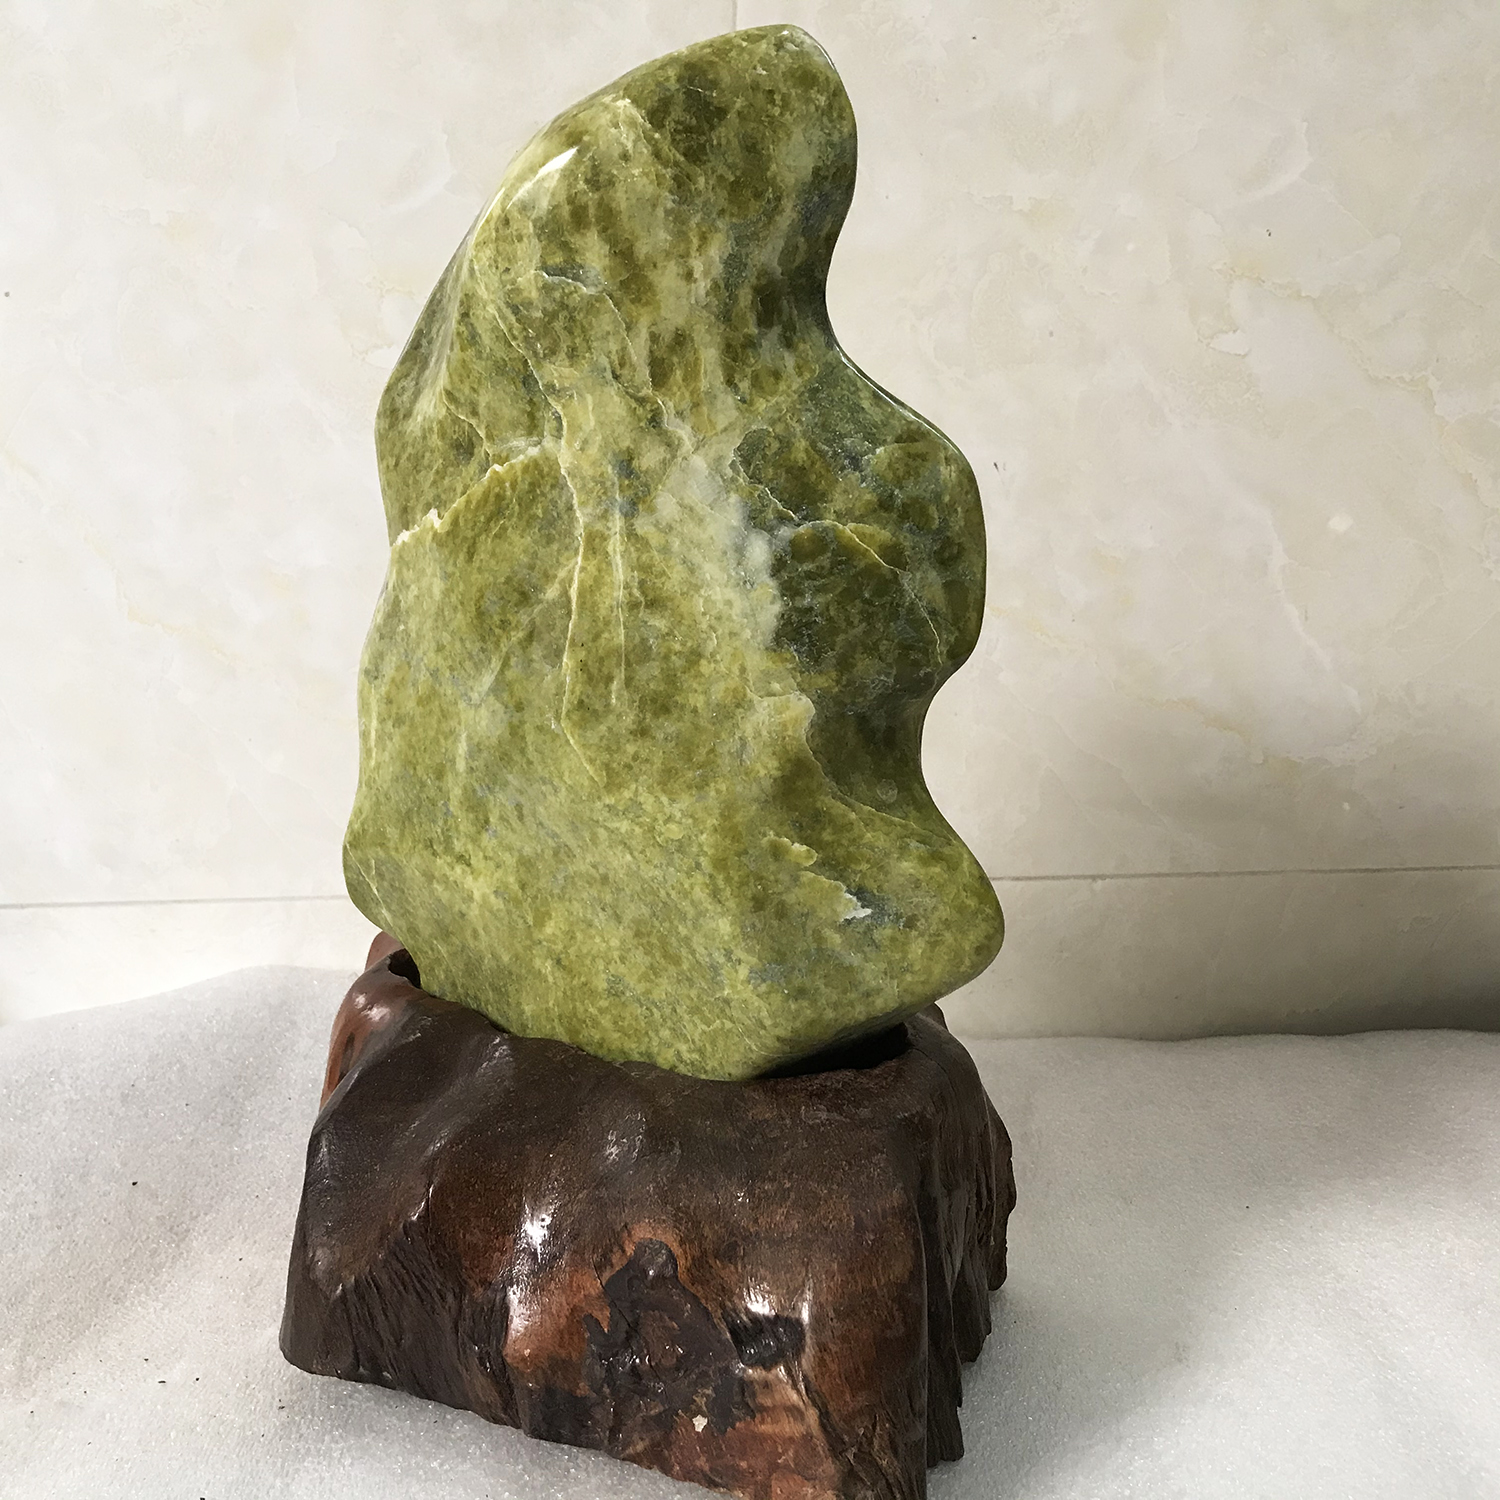 Cây đá tự nhiên để bàn hoàn toàn tự nhiên chất serpentine cao 43cm nặng 7 kg